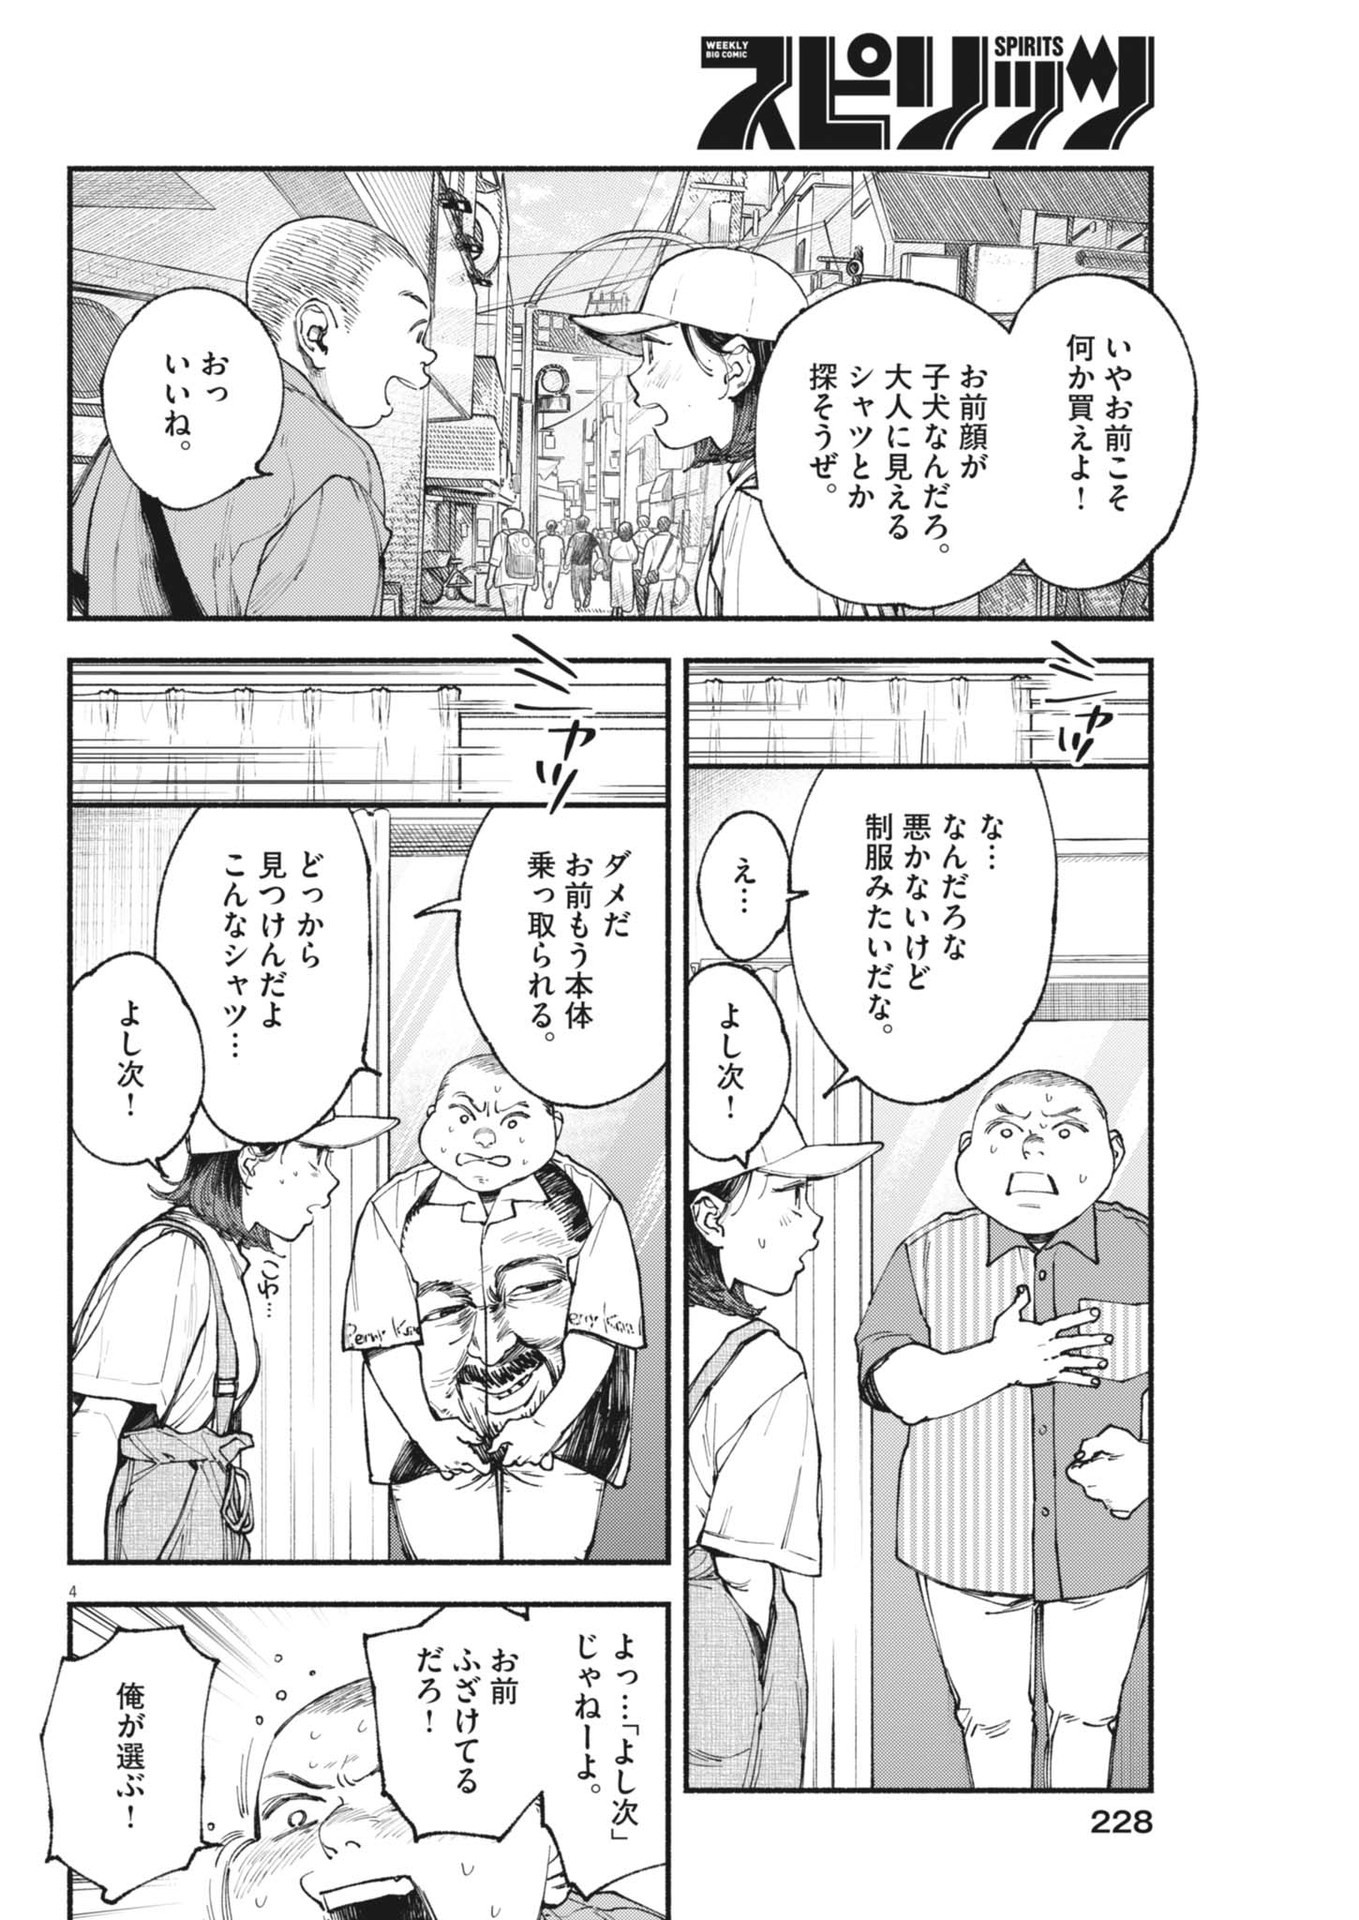 Konoyo wa Tatakau Kachi ga Aru  - Chapter 27 - Page 4